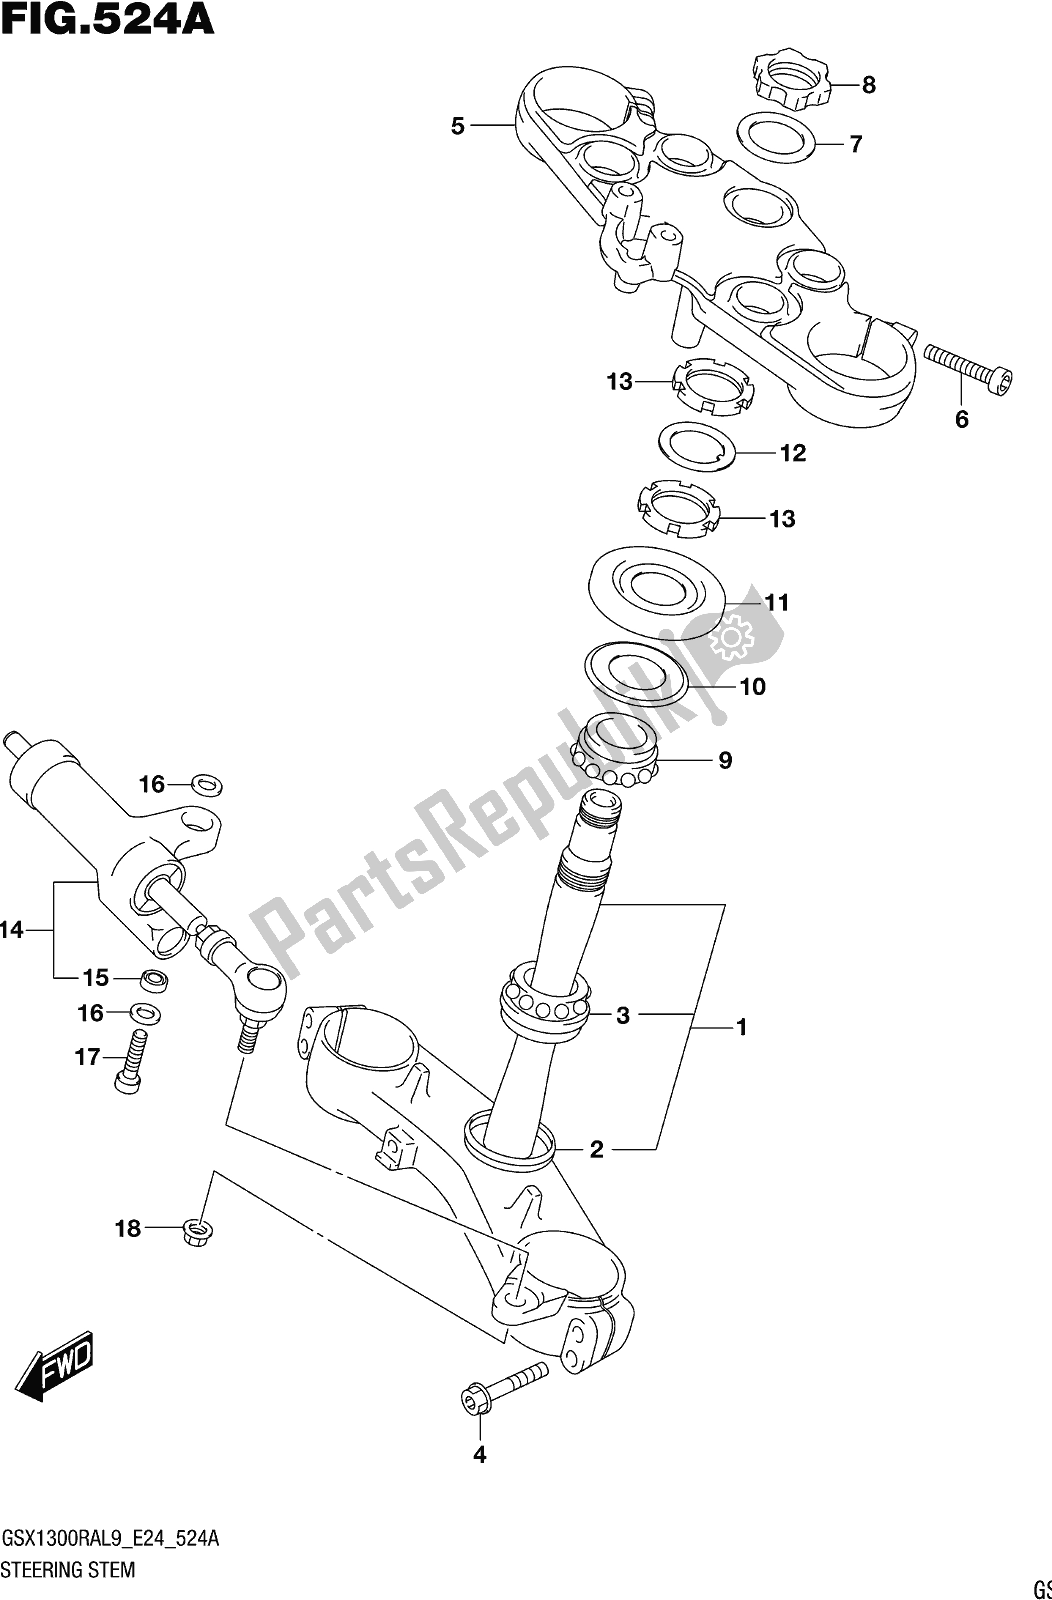 Todas las partes para Fig. 524a Steering Stem de Suzuki GSX 1300 RA 2019